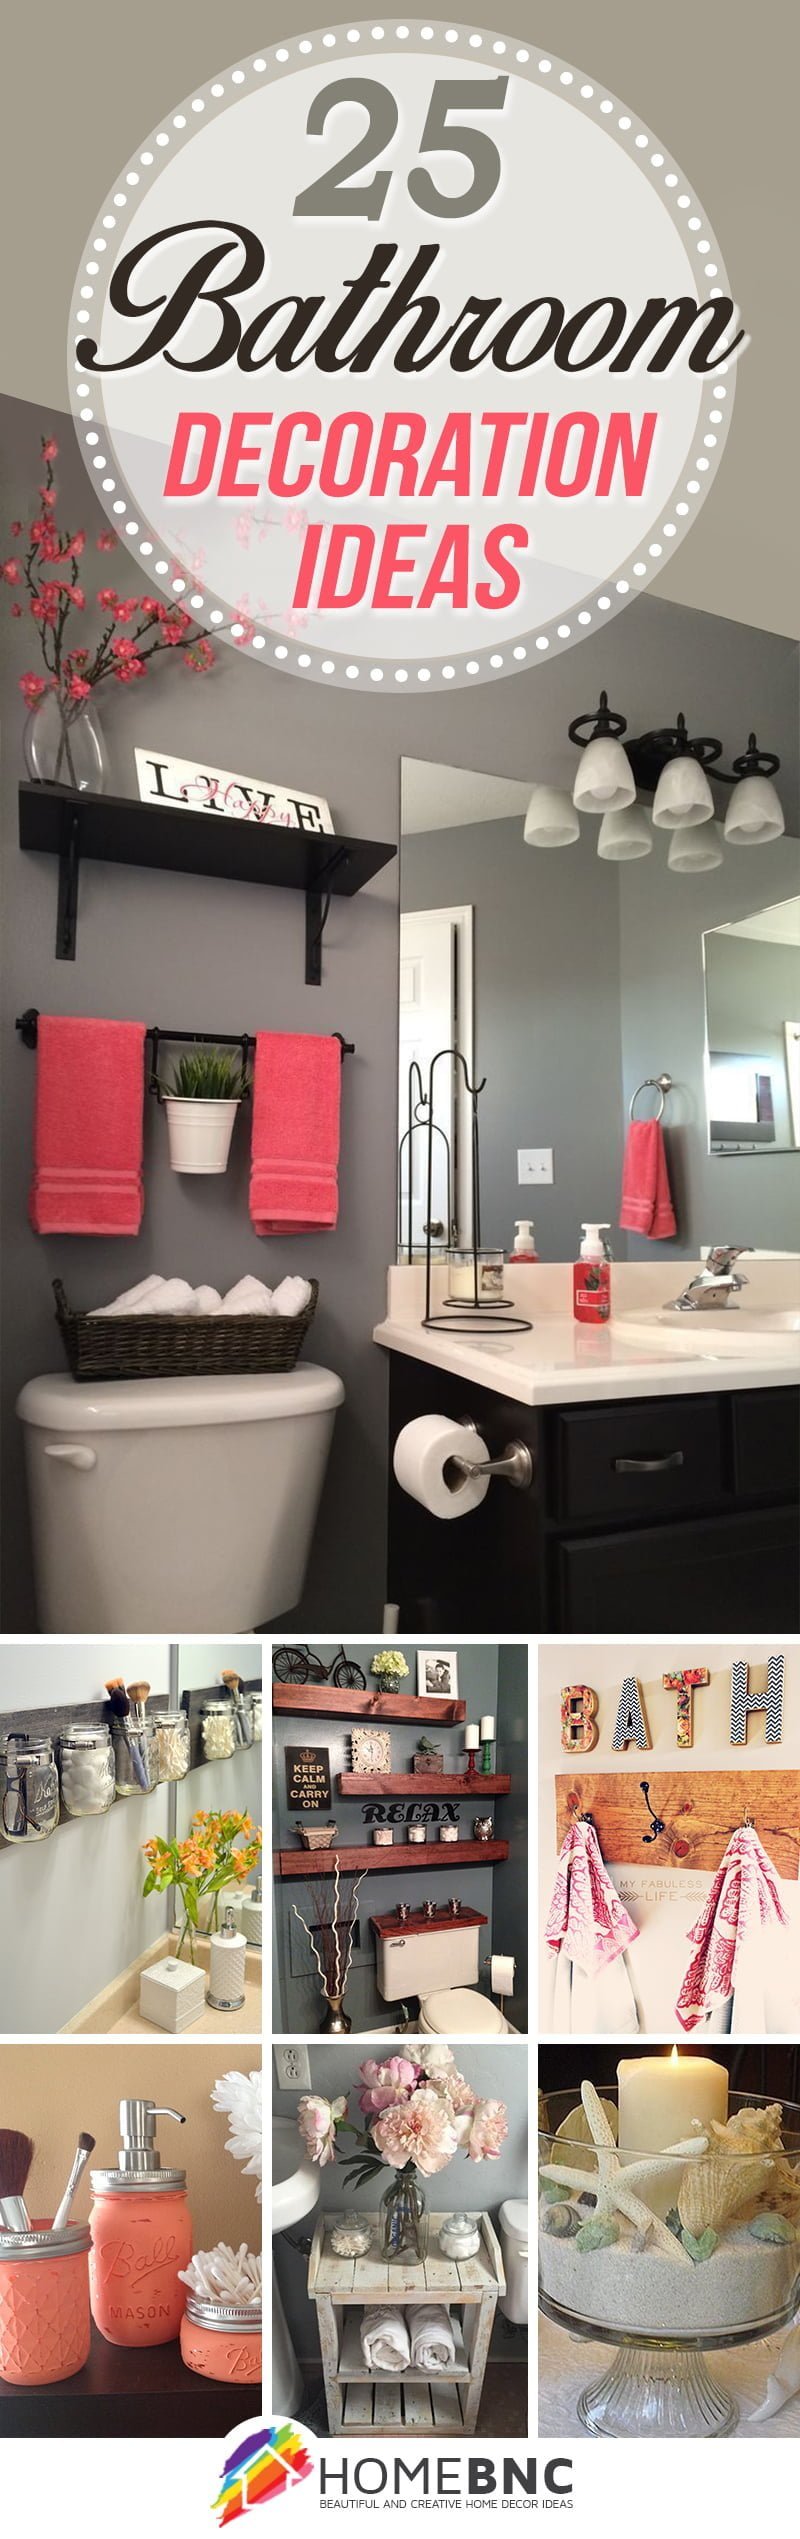 simple bathroom decor ideas